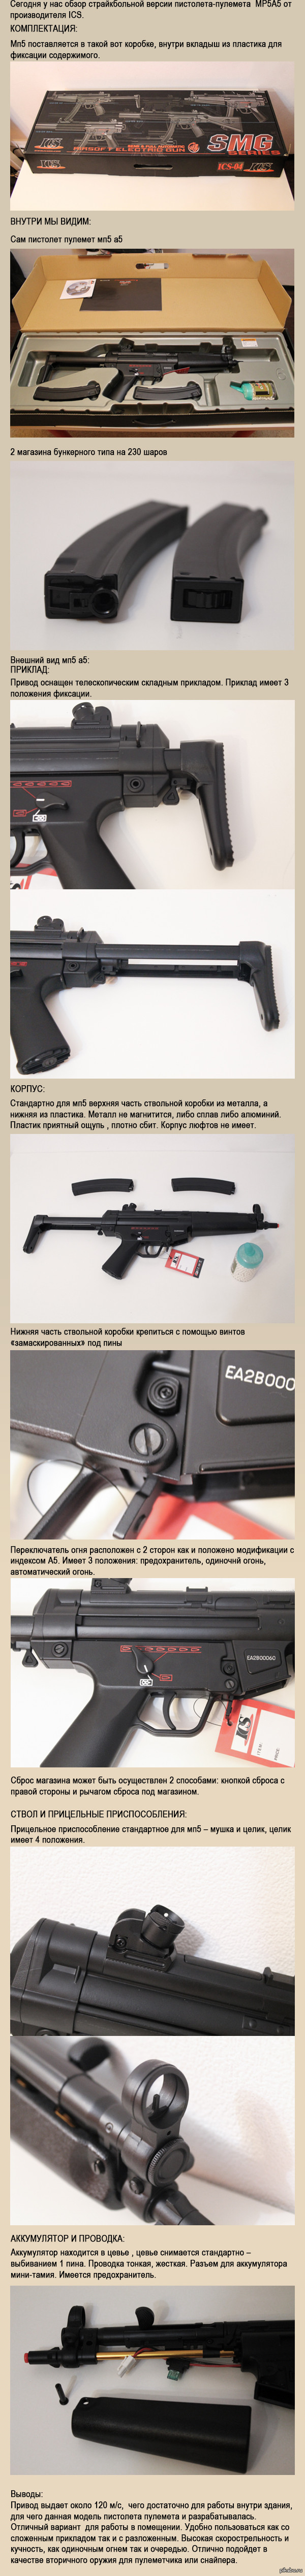    MP5A5  ICS 